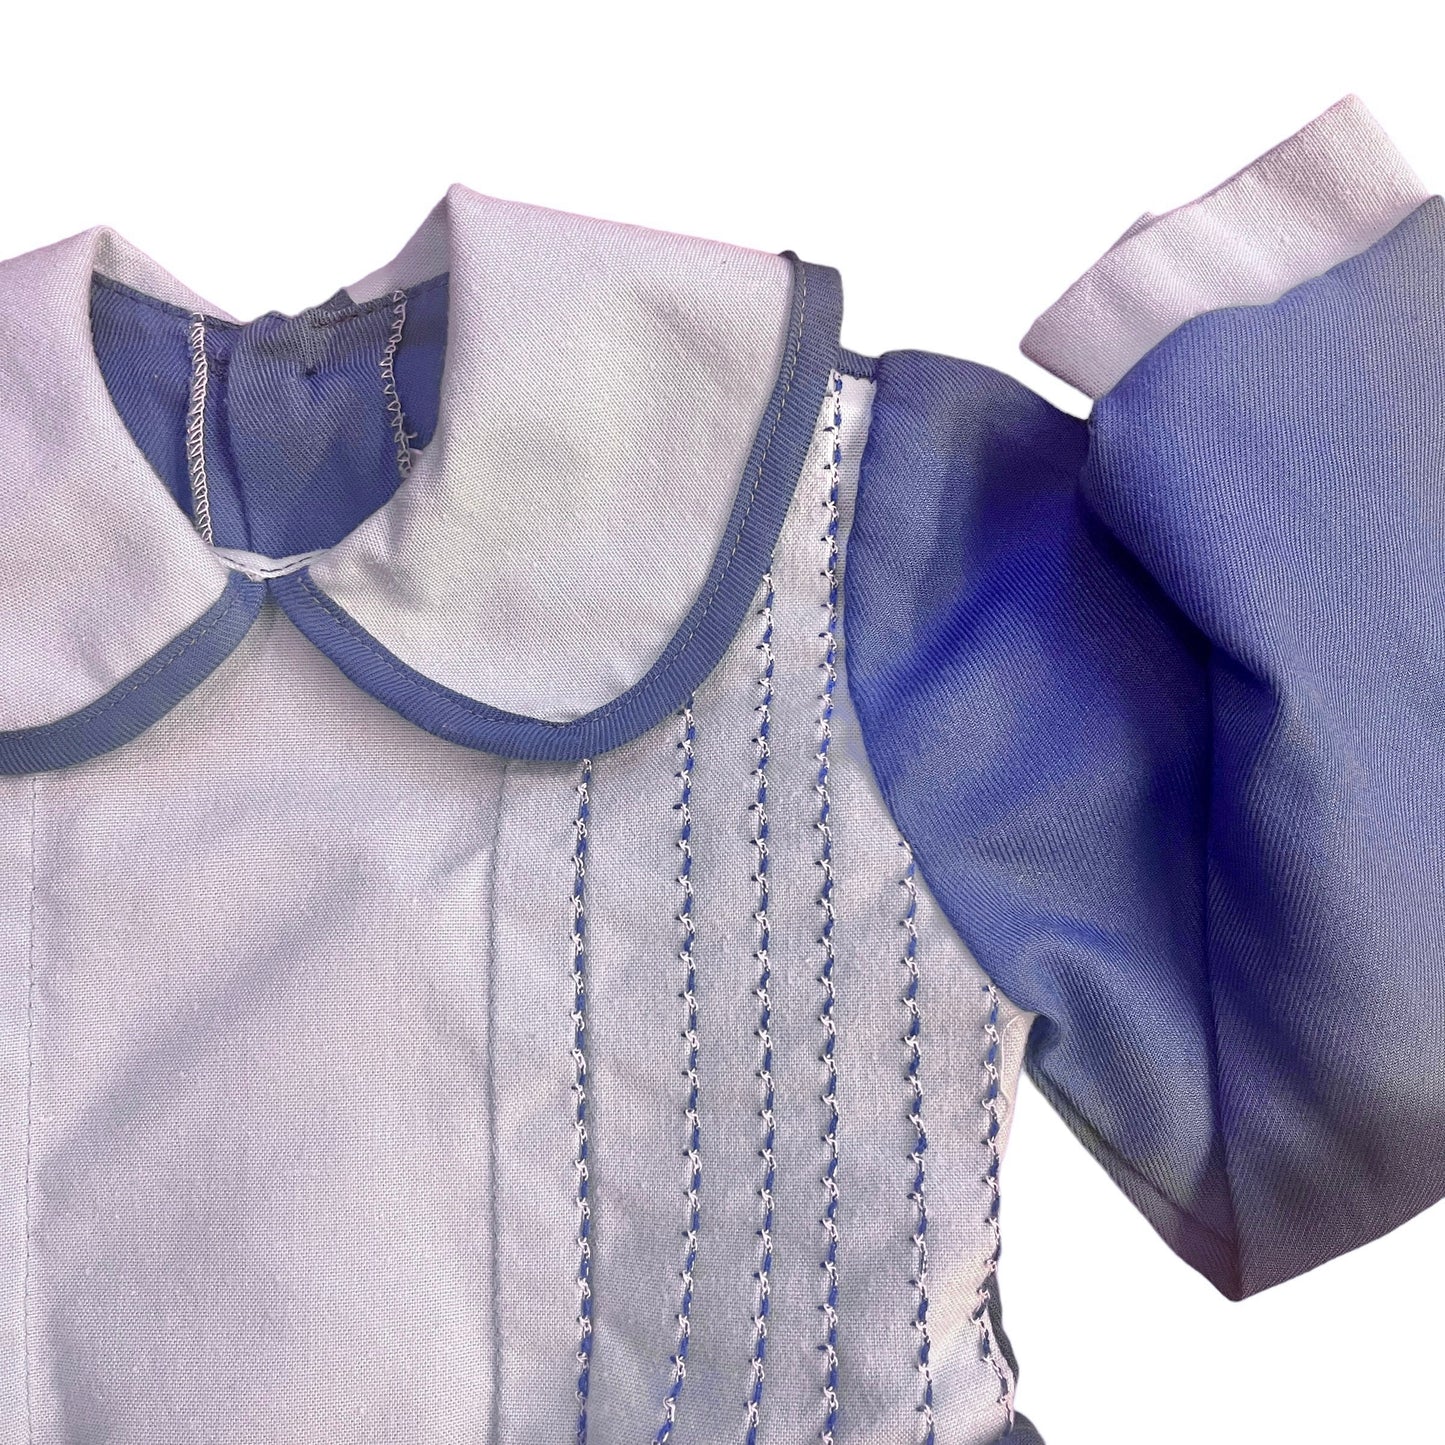 1970's Blue Peter Pan Collar Dress / 18-24 Months